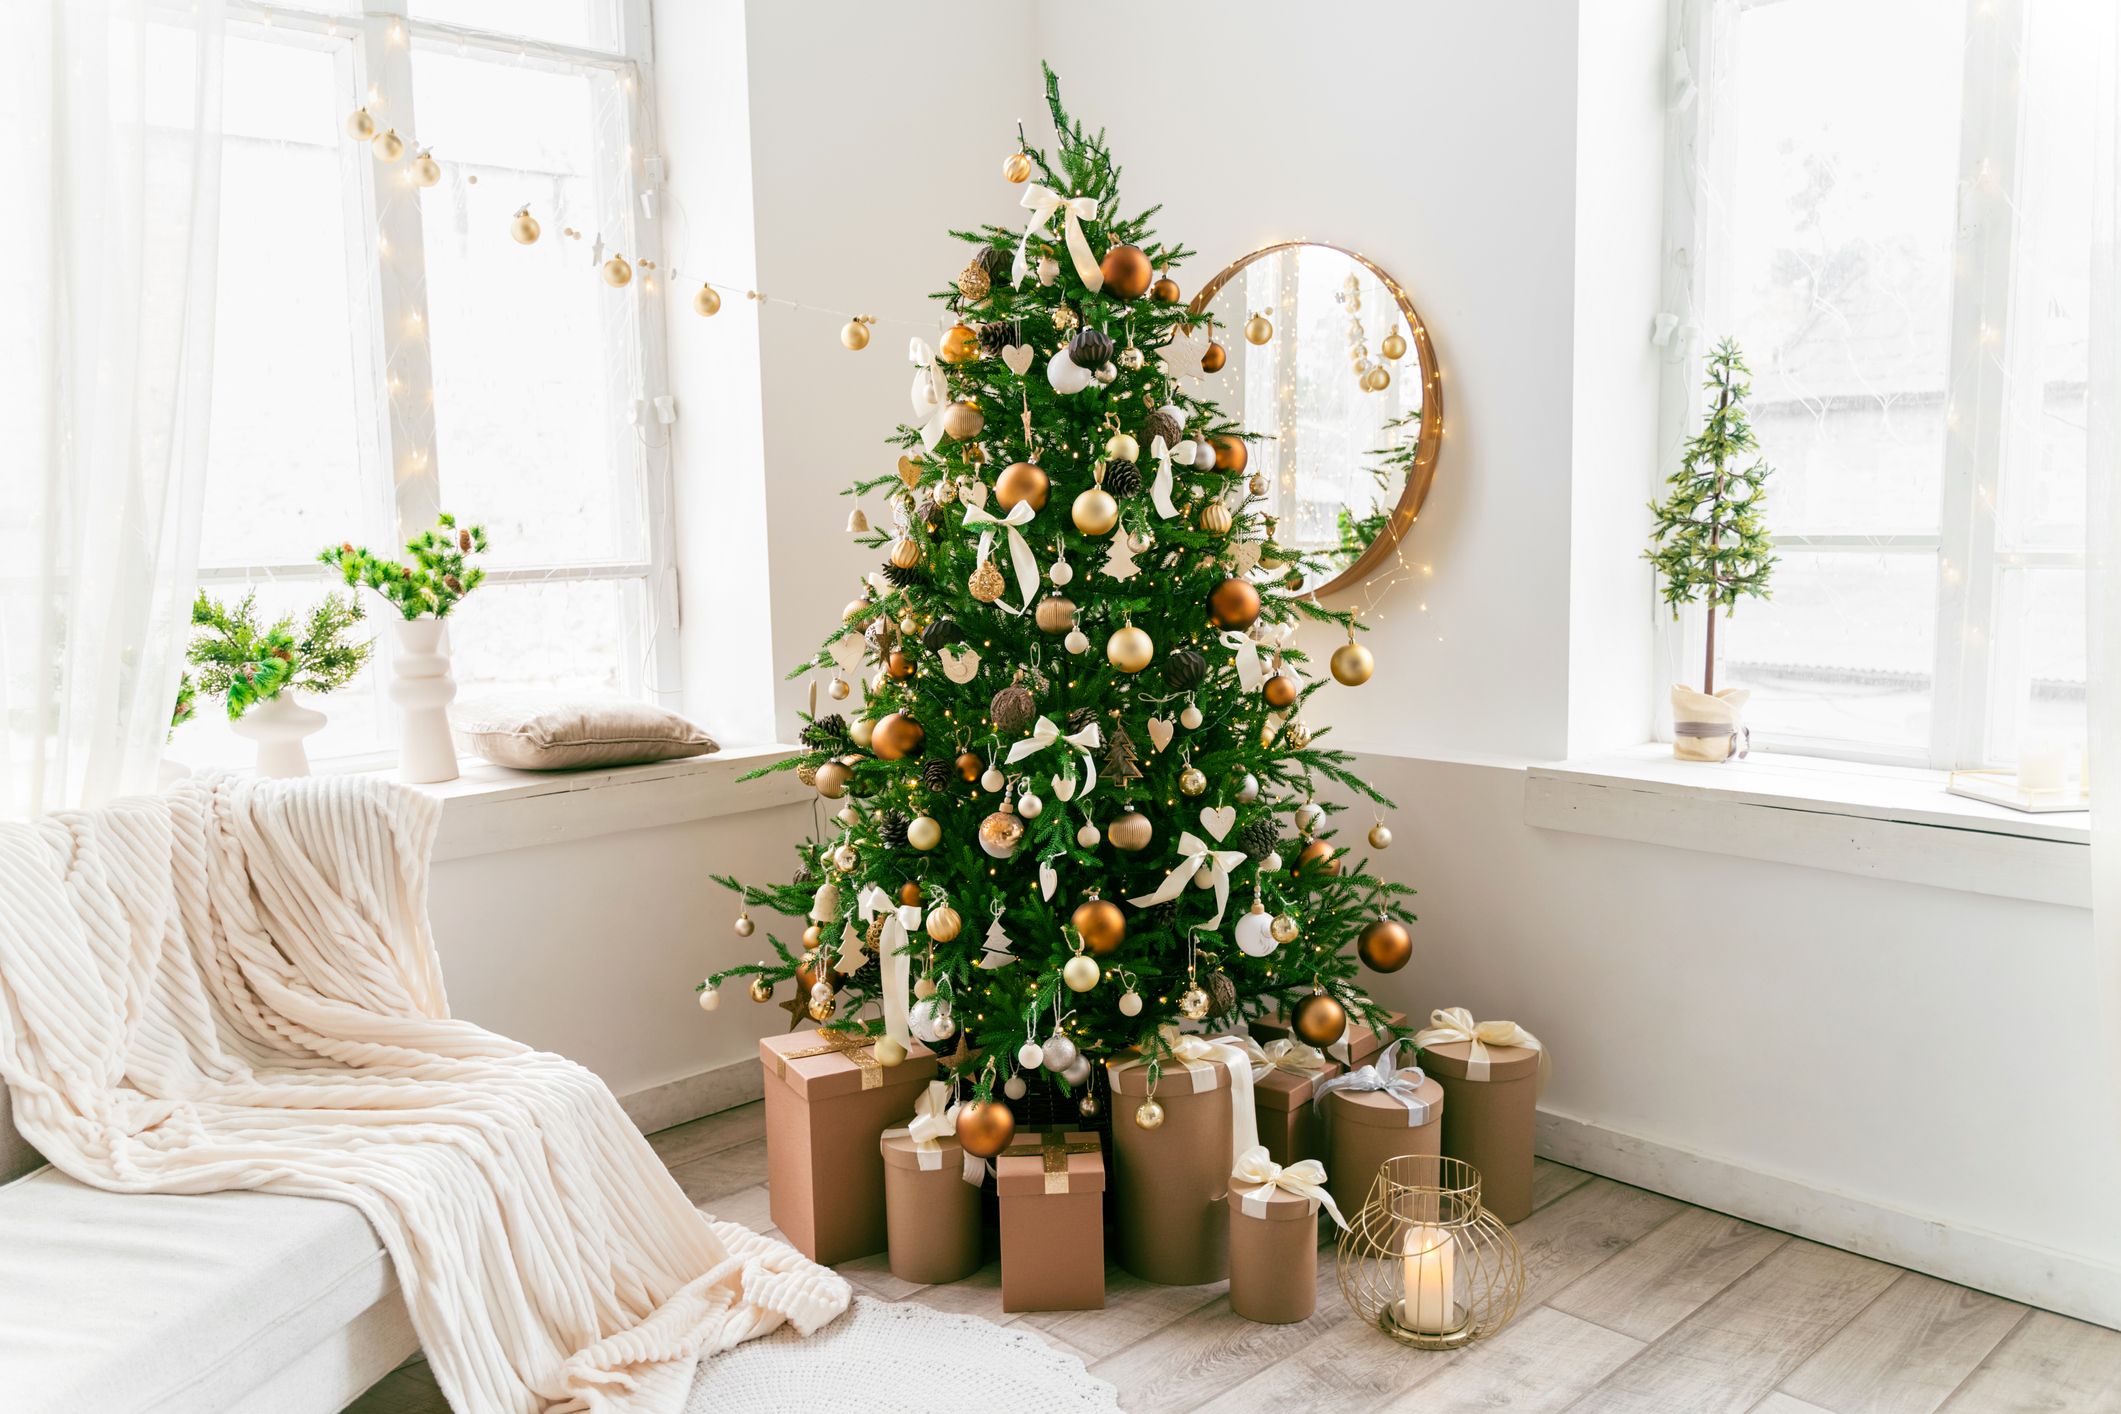 16 Best Types of Christmas Trees - Real Christmas Tree Varieties